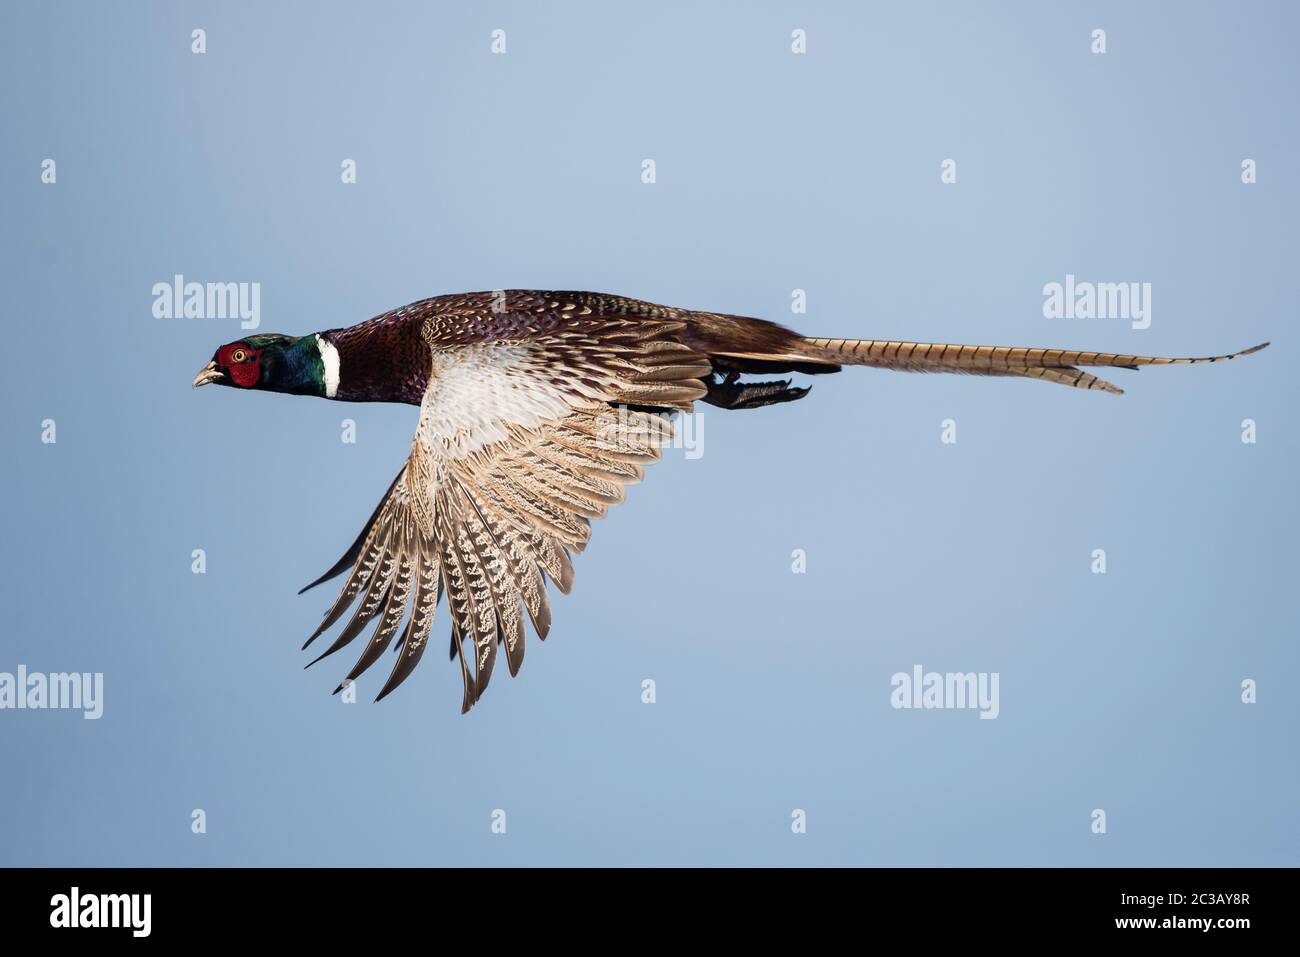 Männchen von Fasan im Flug am Himmel. Sein lateinischer Name ist Phasianus colchicus. Stockfoto